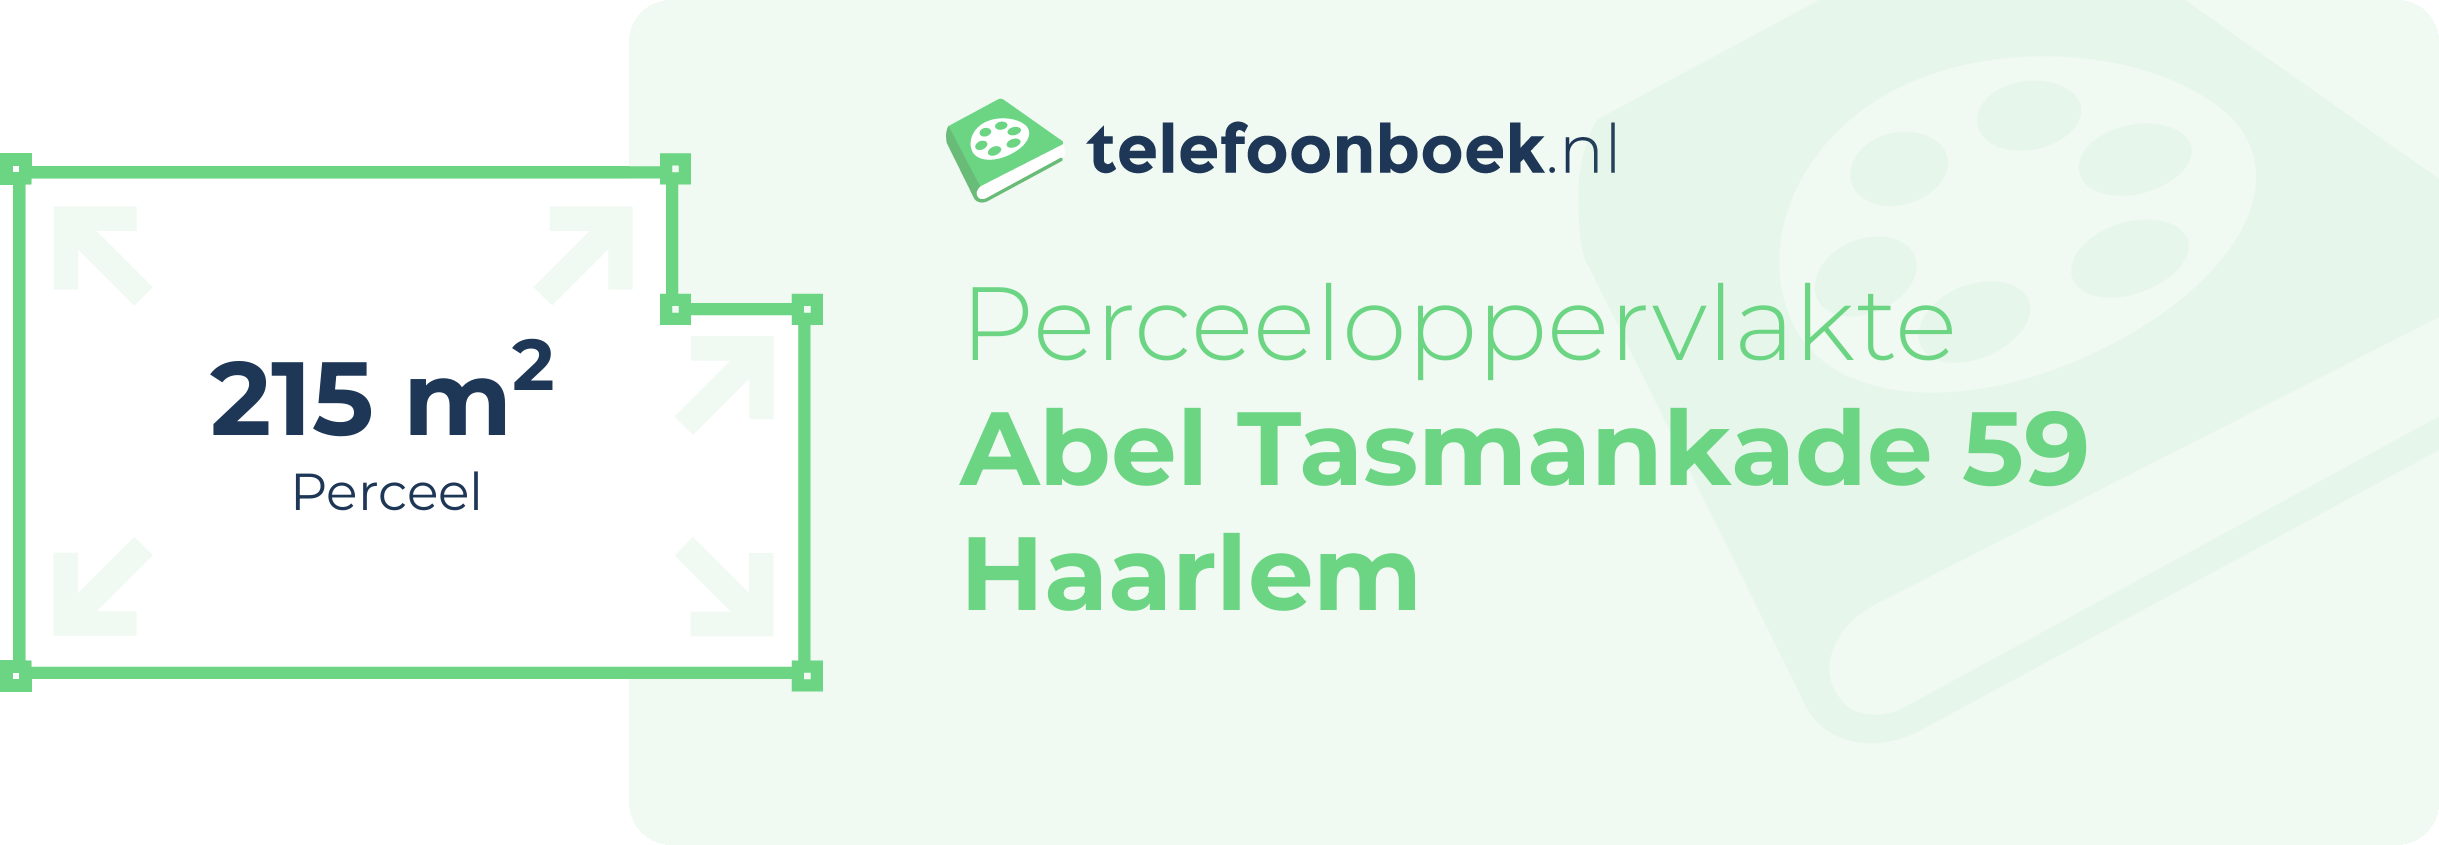 Perceeloppervlakte Abel Tasmankade 59 Haarlem